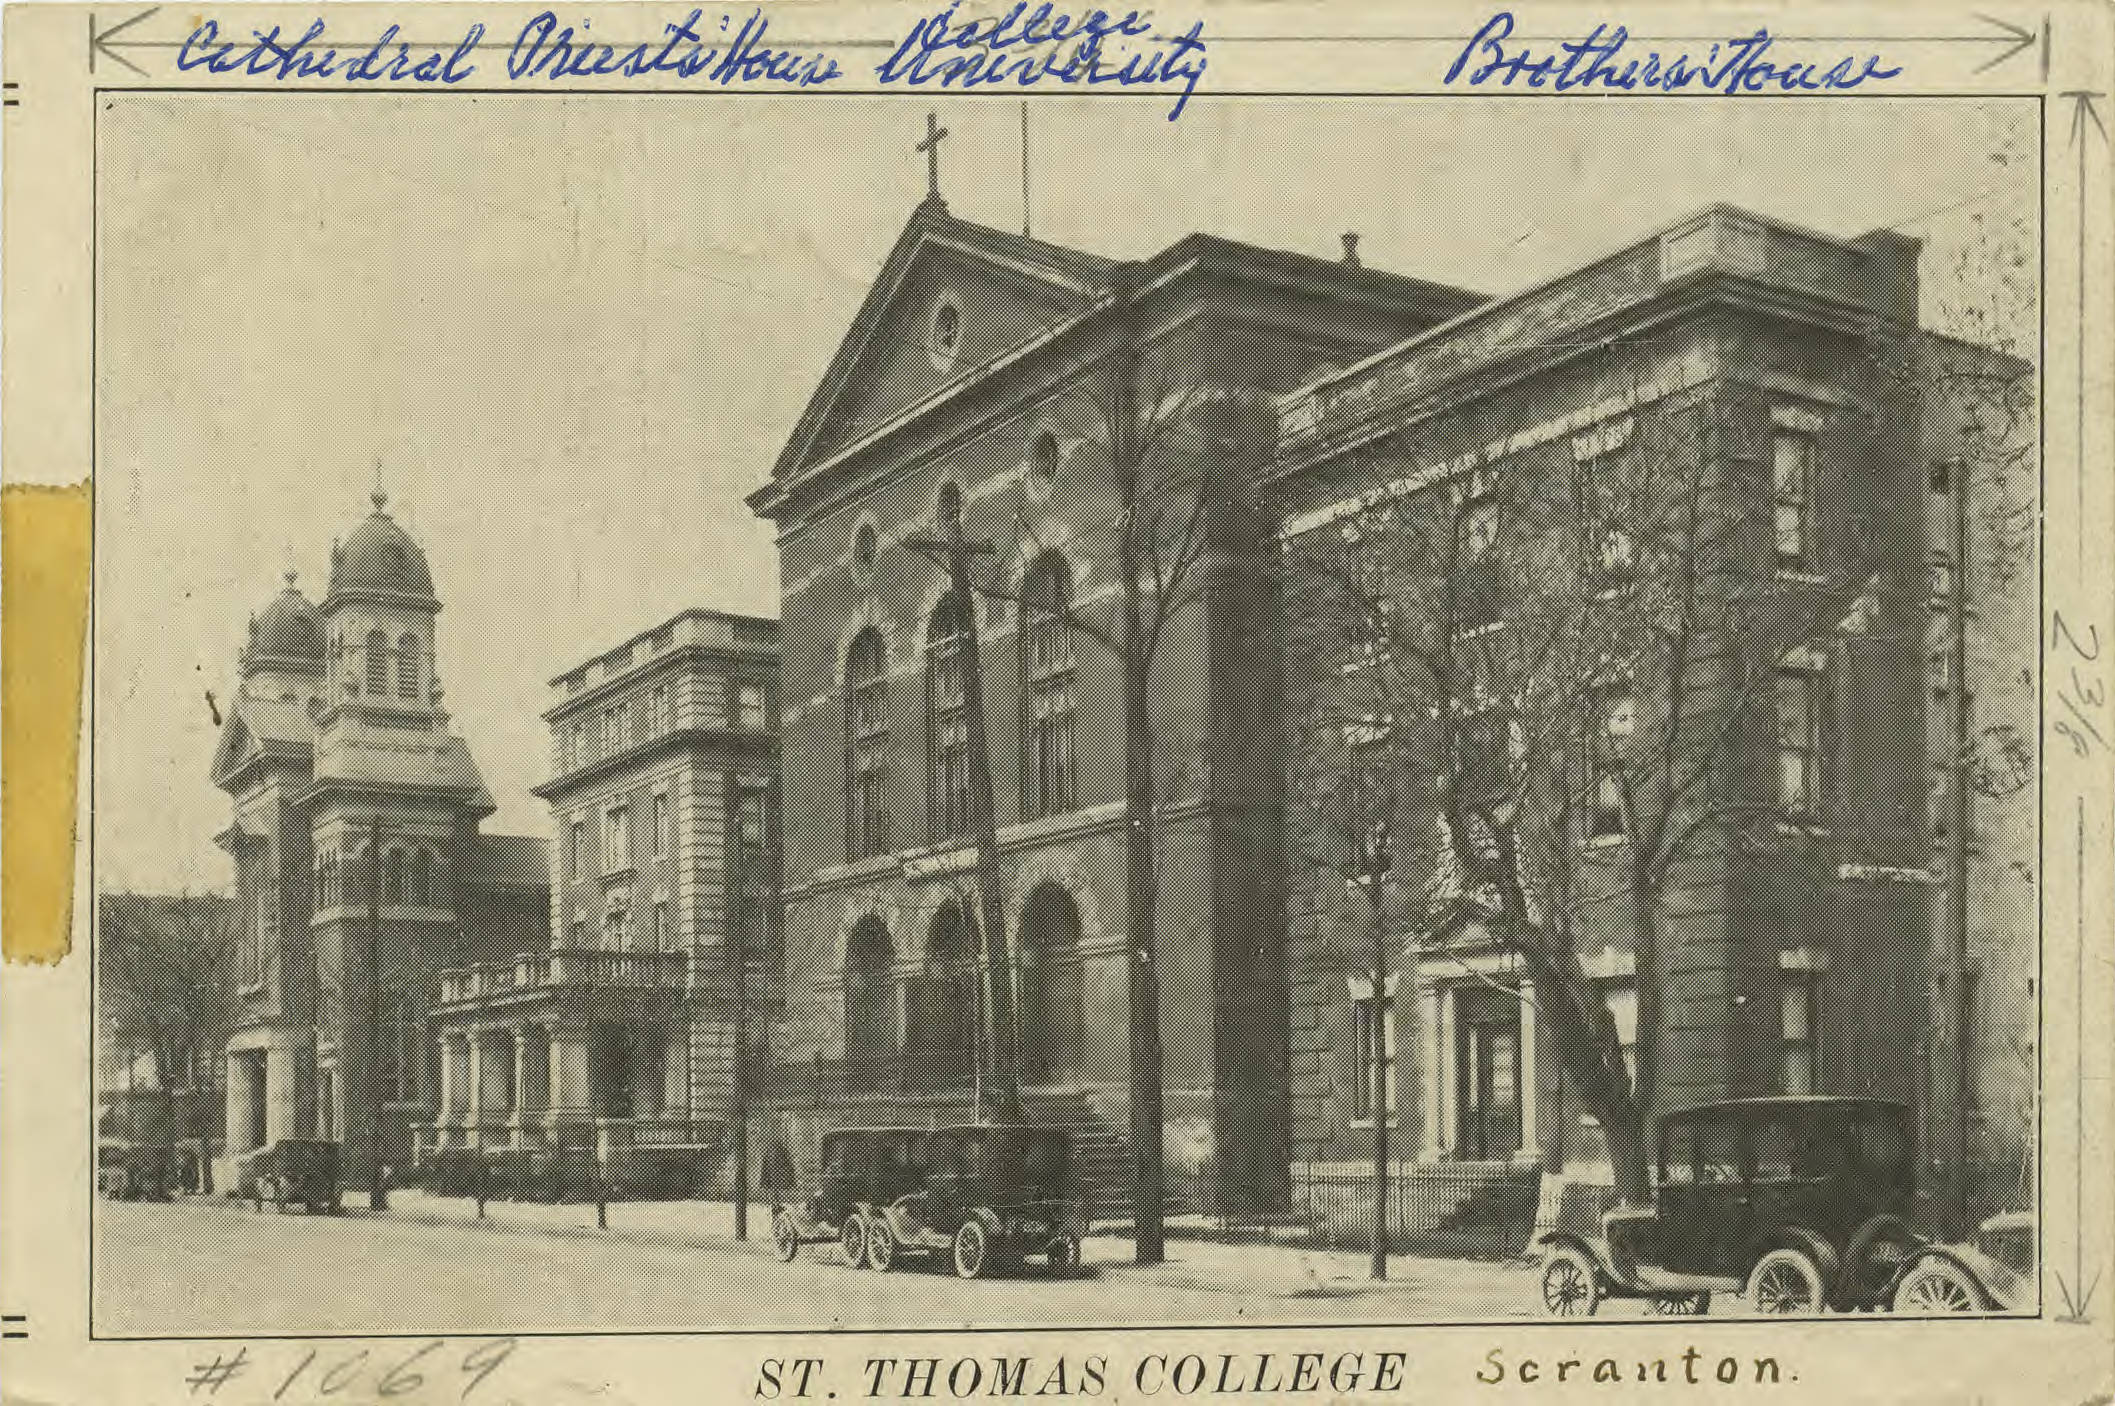 St. Thomas College campus, ca. 1920s